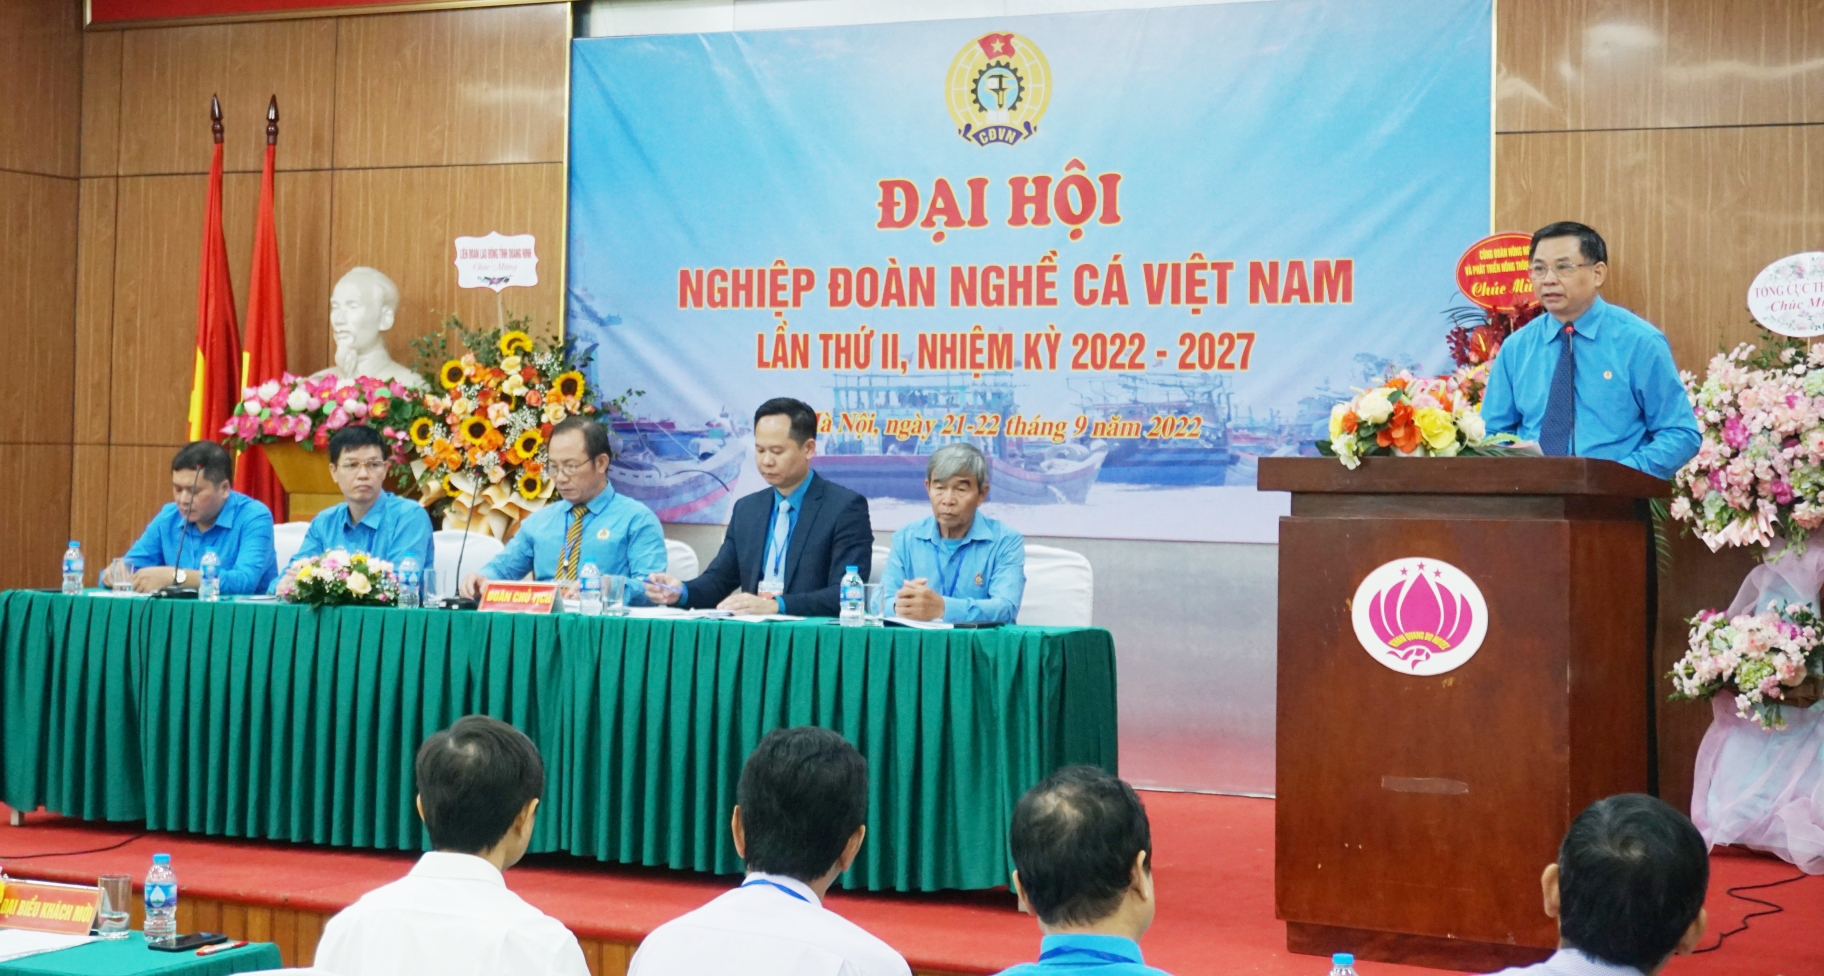 Nghiệp đoàn Nghề cá Việt Nam tiến hành Đại hội lần thứ II, nhiệm kỳ 2022 - 2027